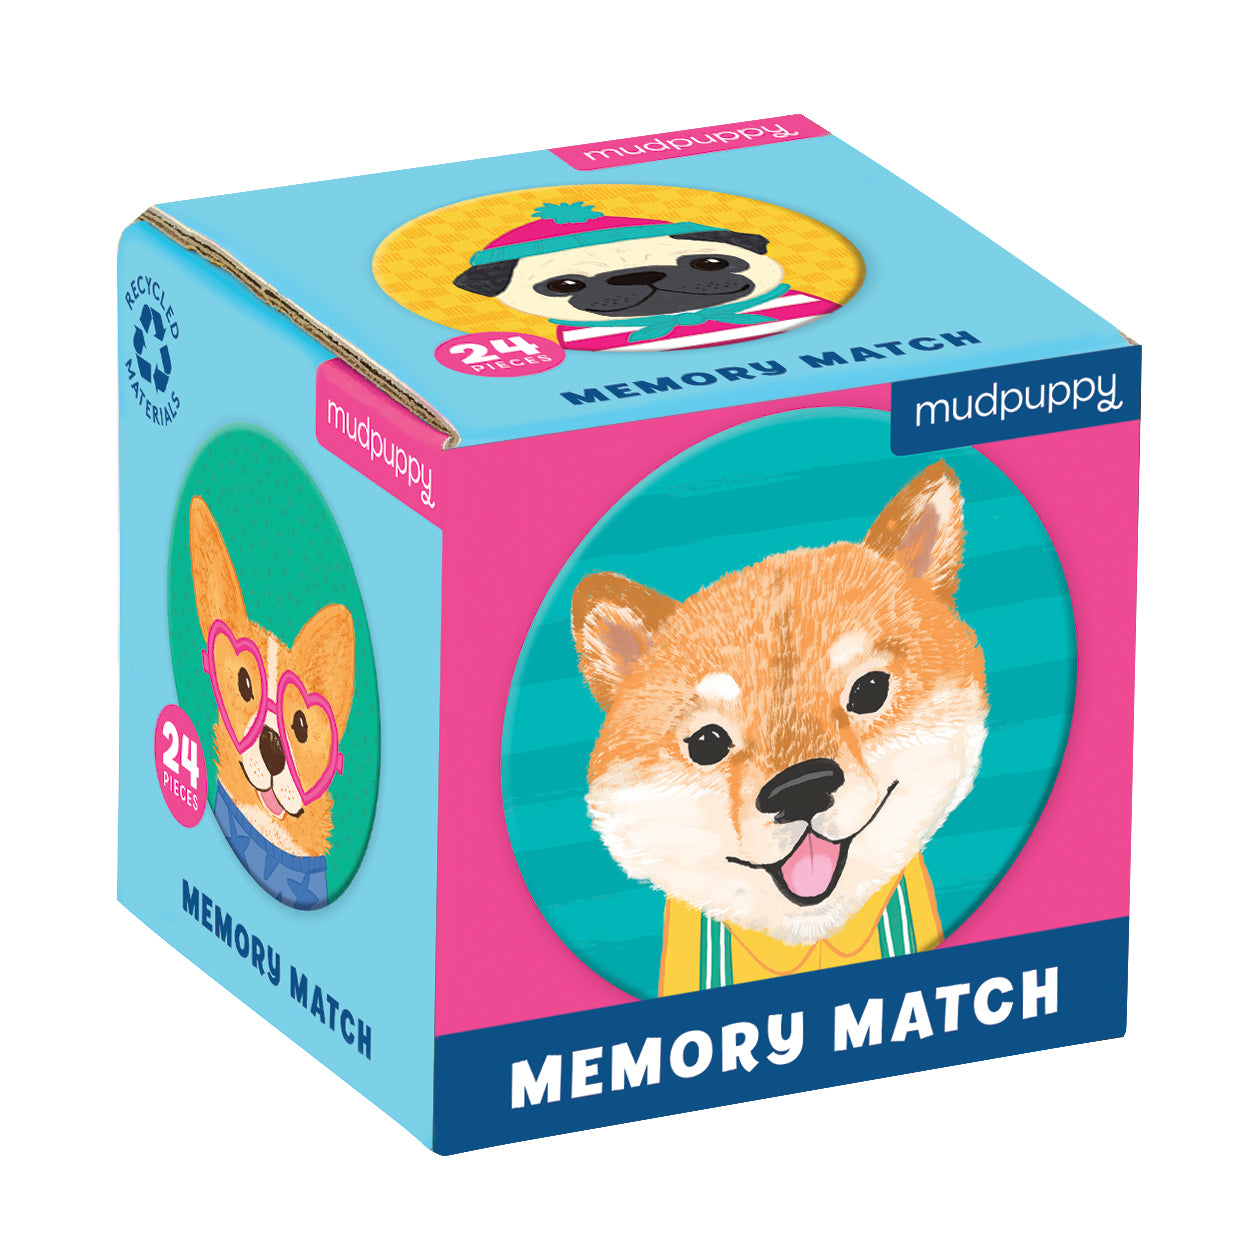 Memory de poche Mudpuppy, 24 ronds cartonnés de chiens amusants. Une activité ludique et colorée à partager en famille. Petit format parfait pour les voyages.